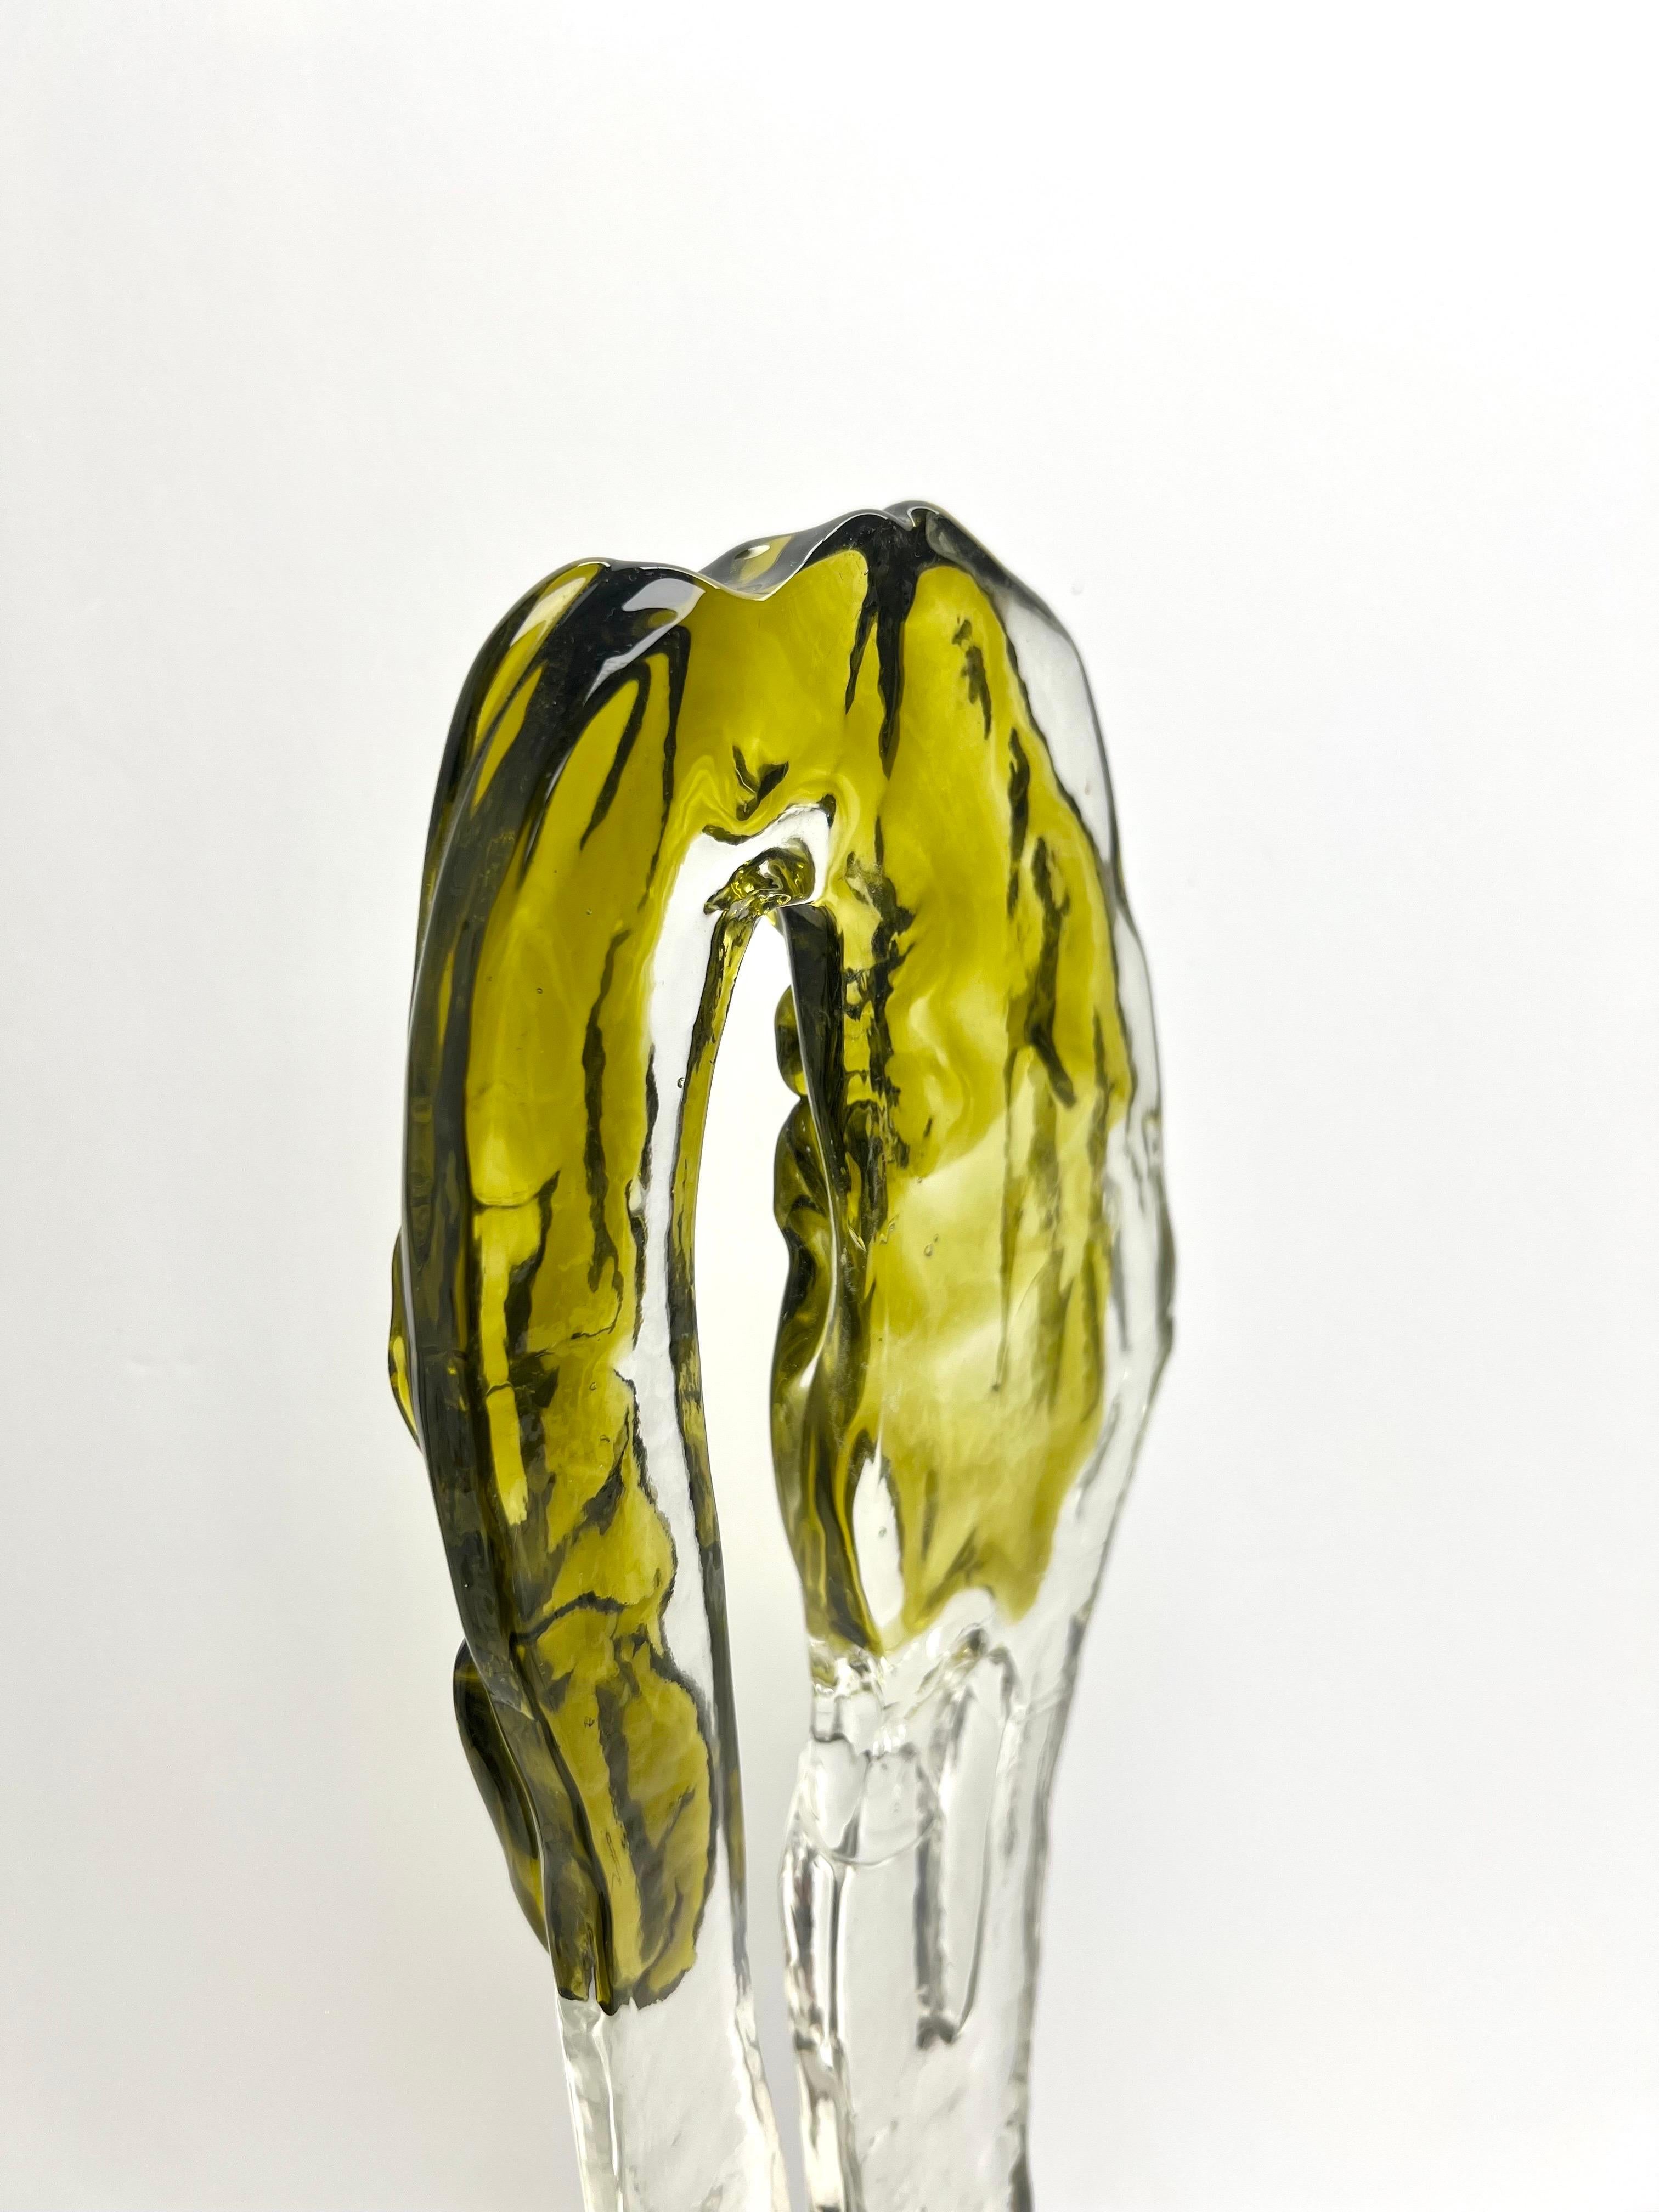 Luciano Gaspari for Salviati Murano Art Glass Sculpture, 1970s For Sale 3